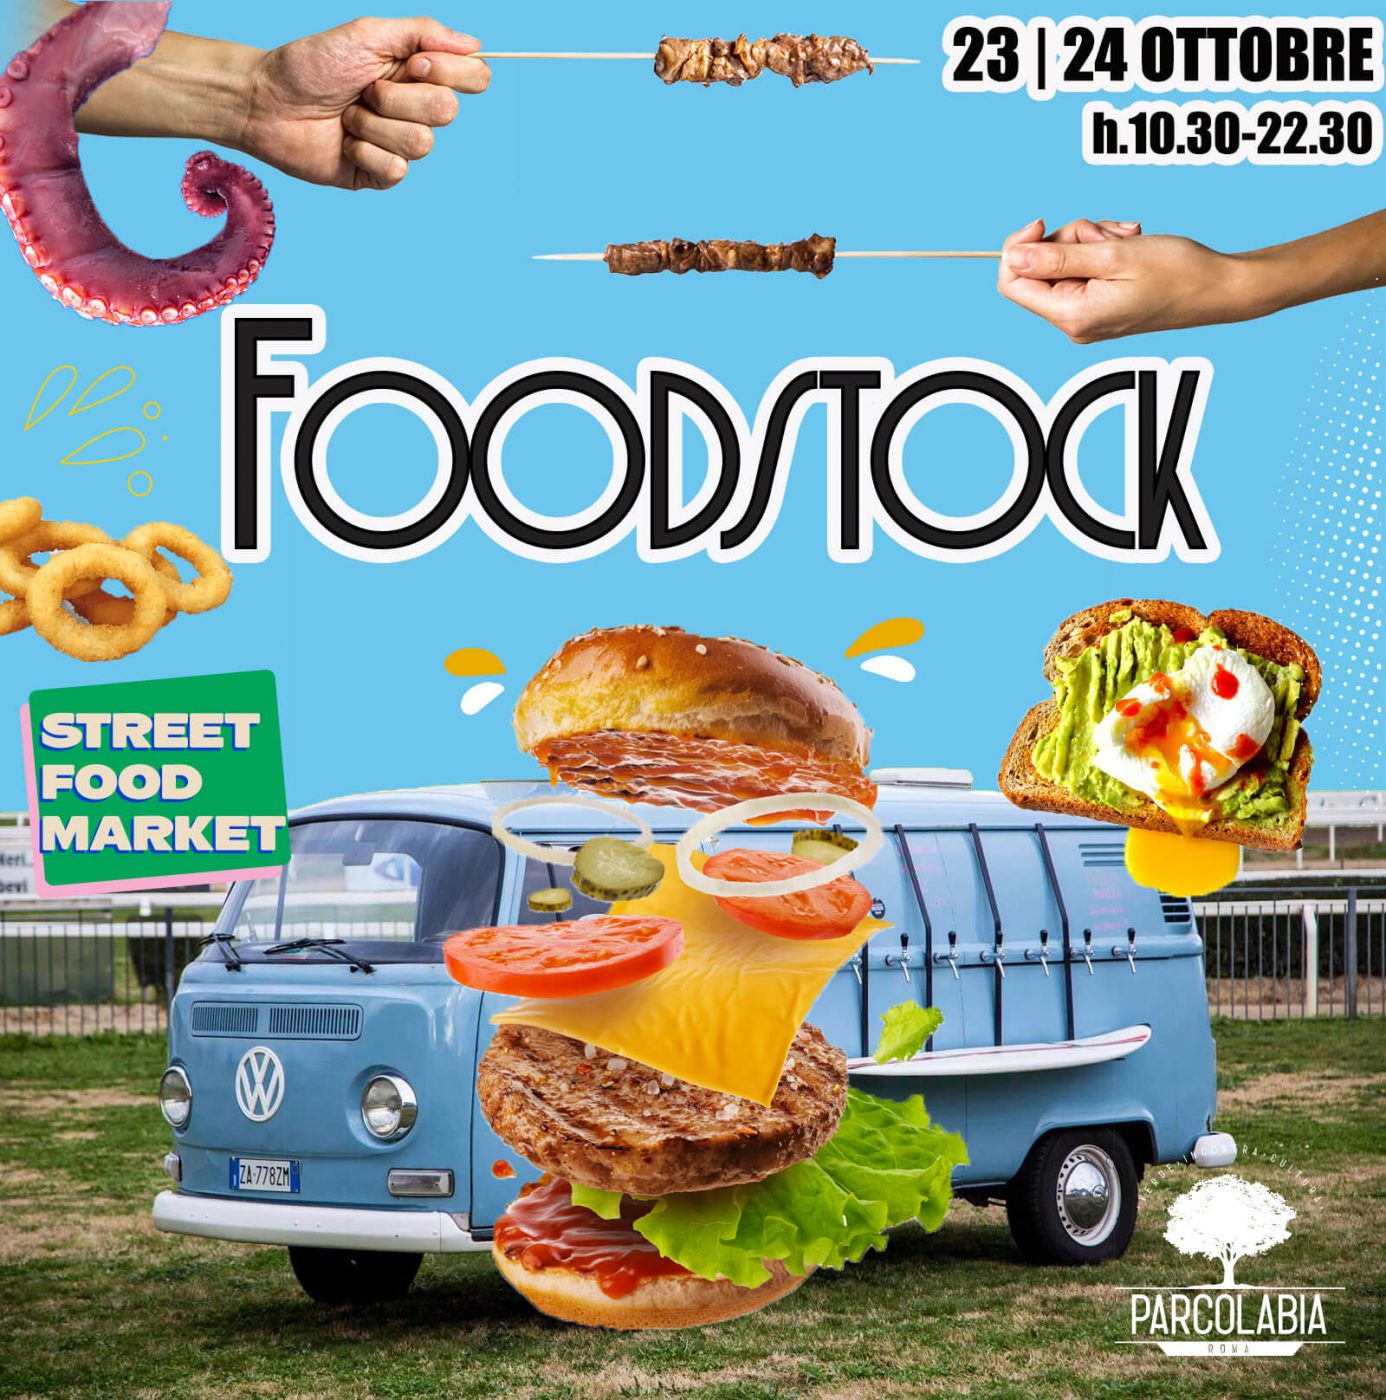 foodstock